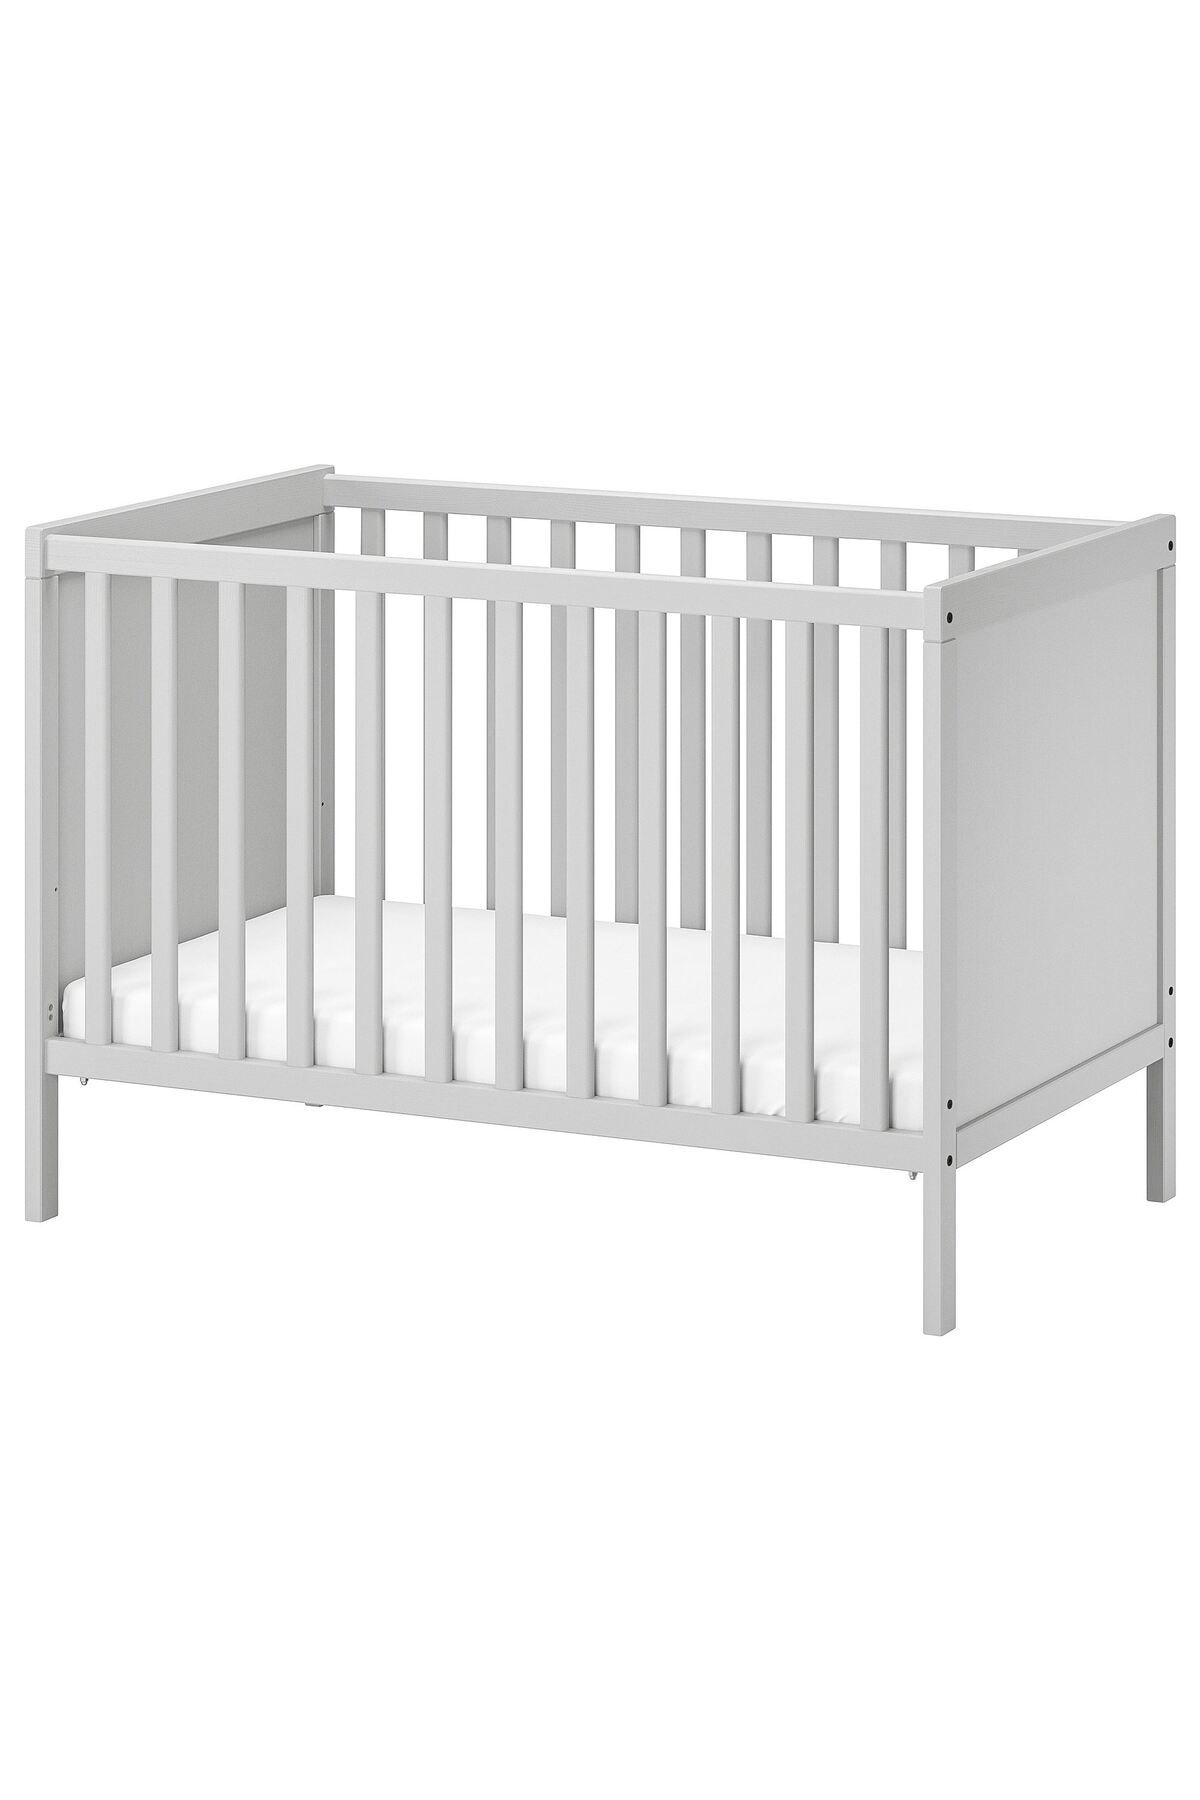 IKEA bebek karyolası, gri, 60x120 cm